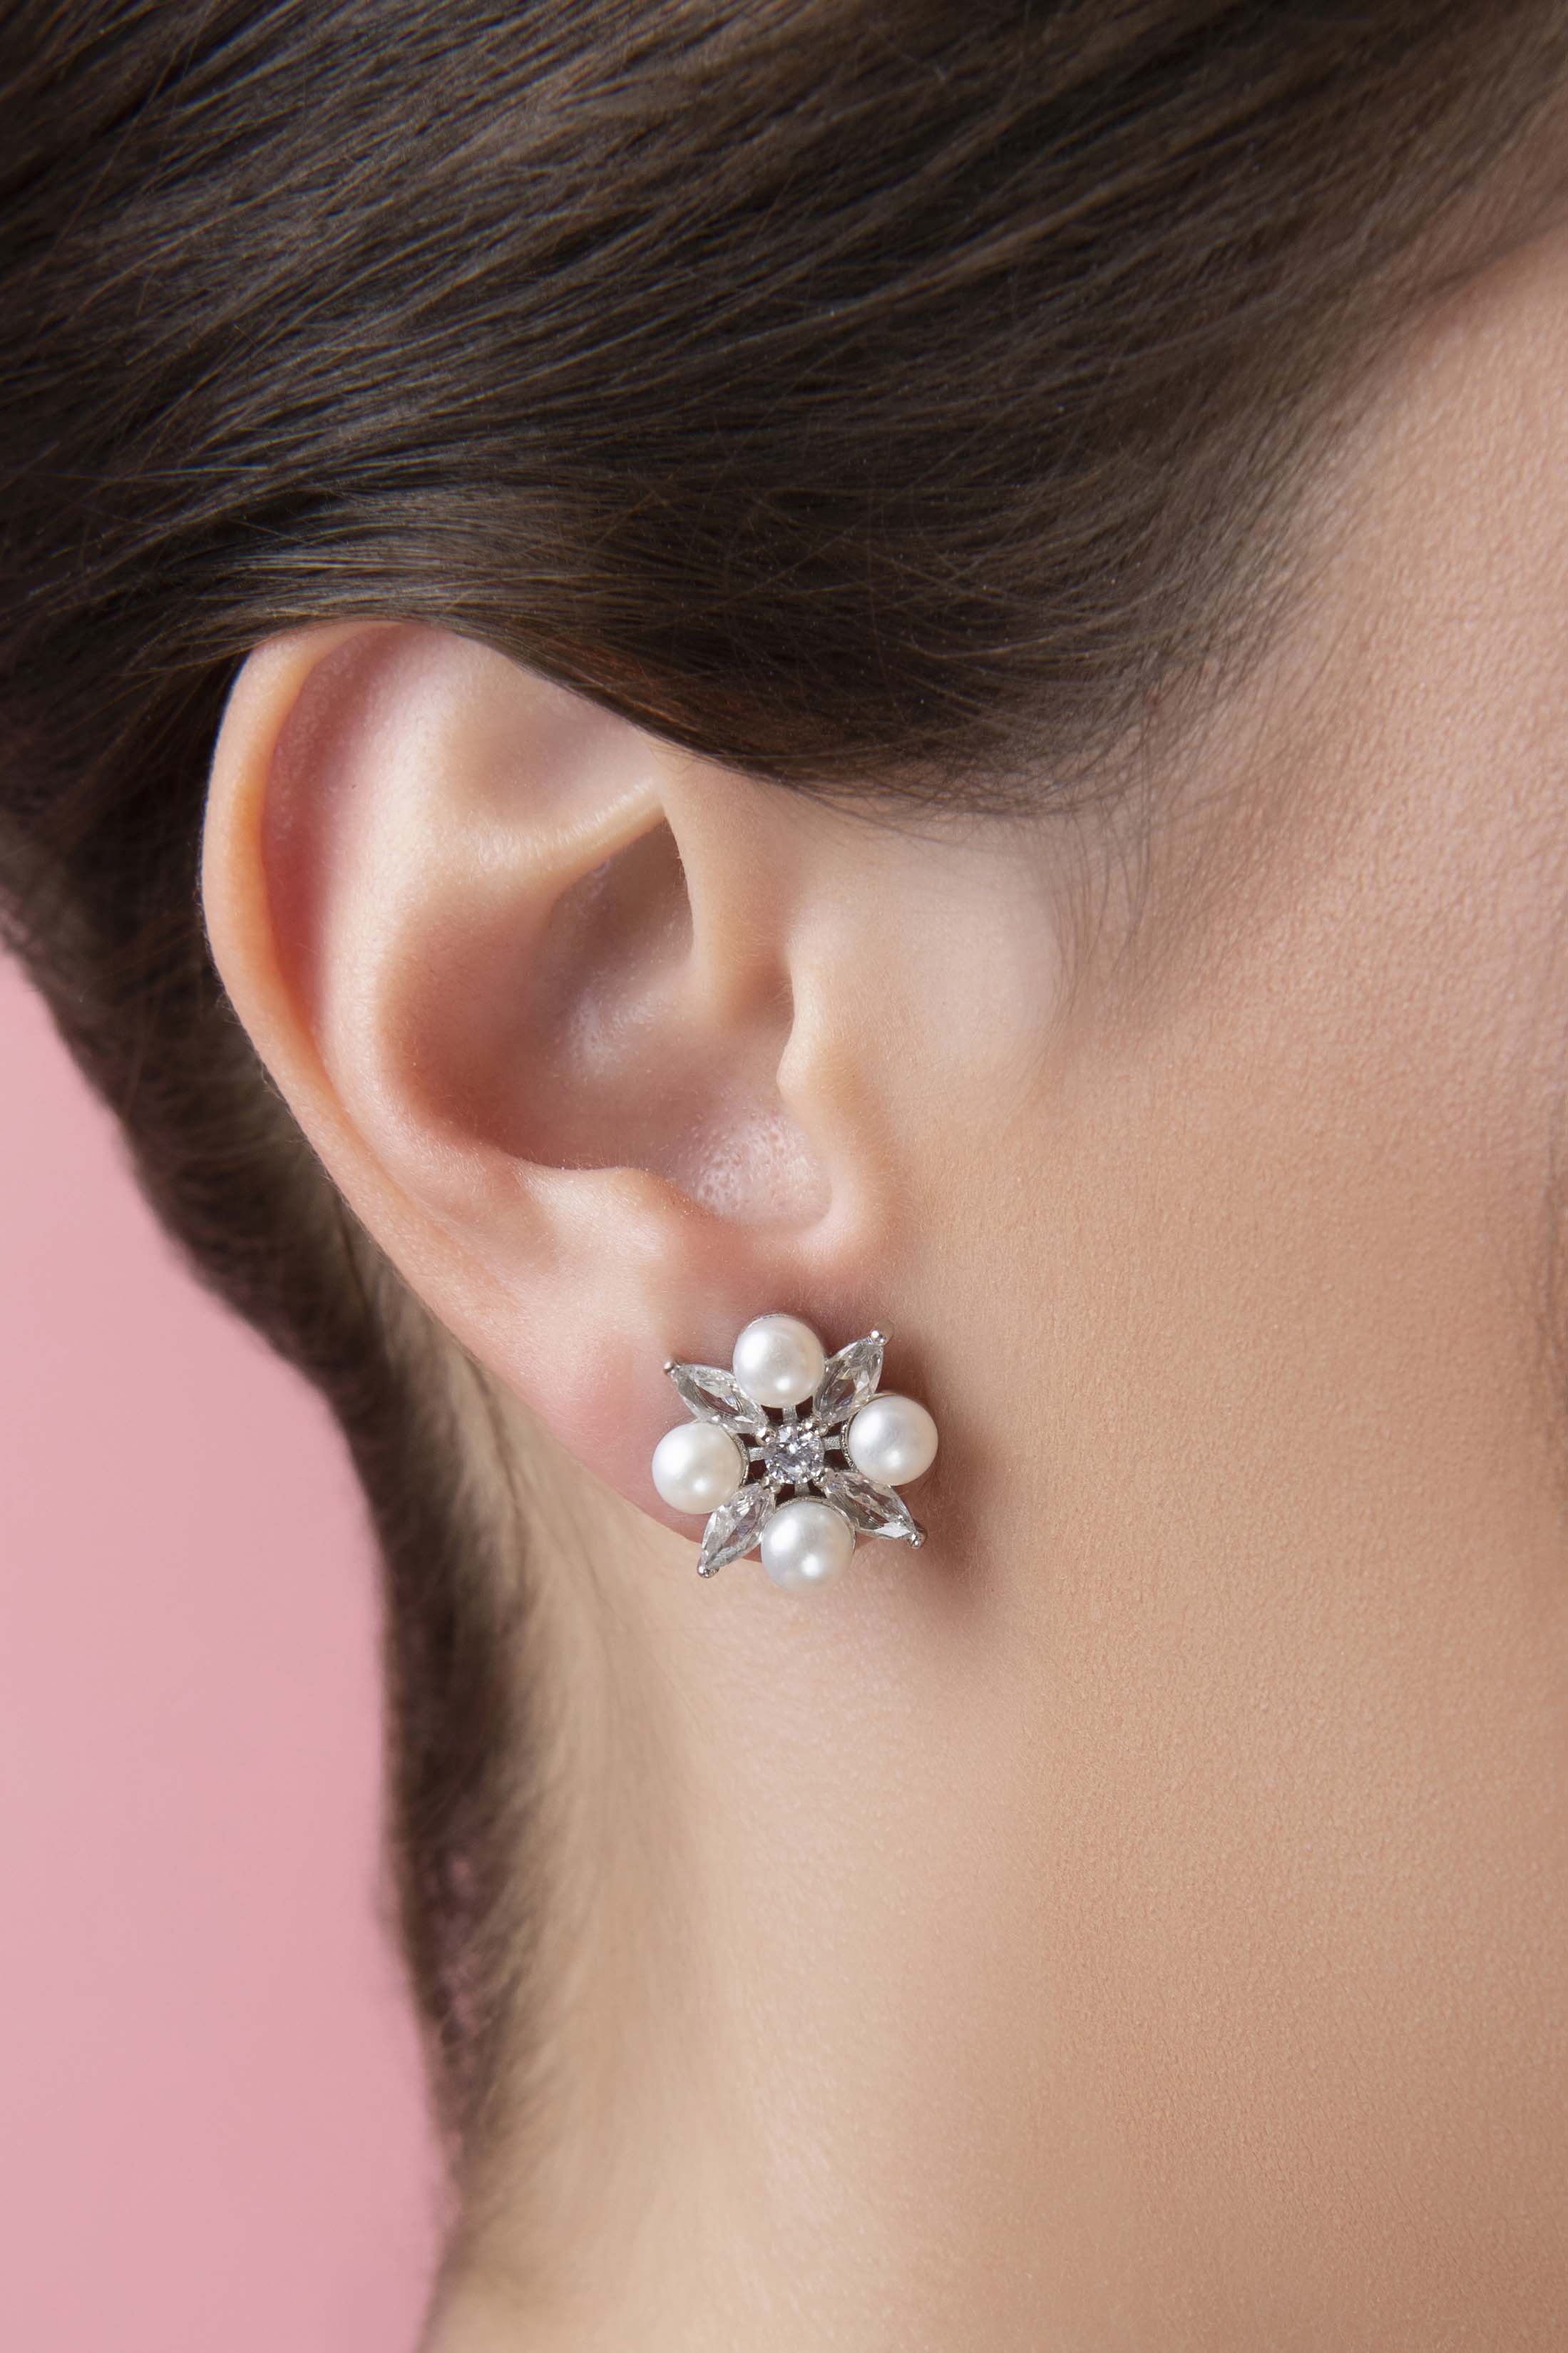 Crystal Perla Bridal Stud Earring Set